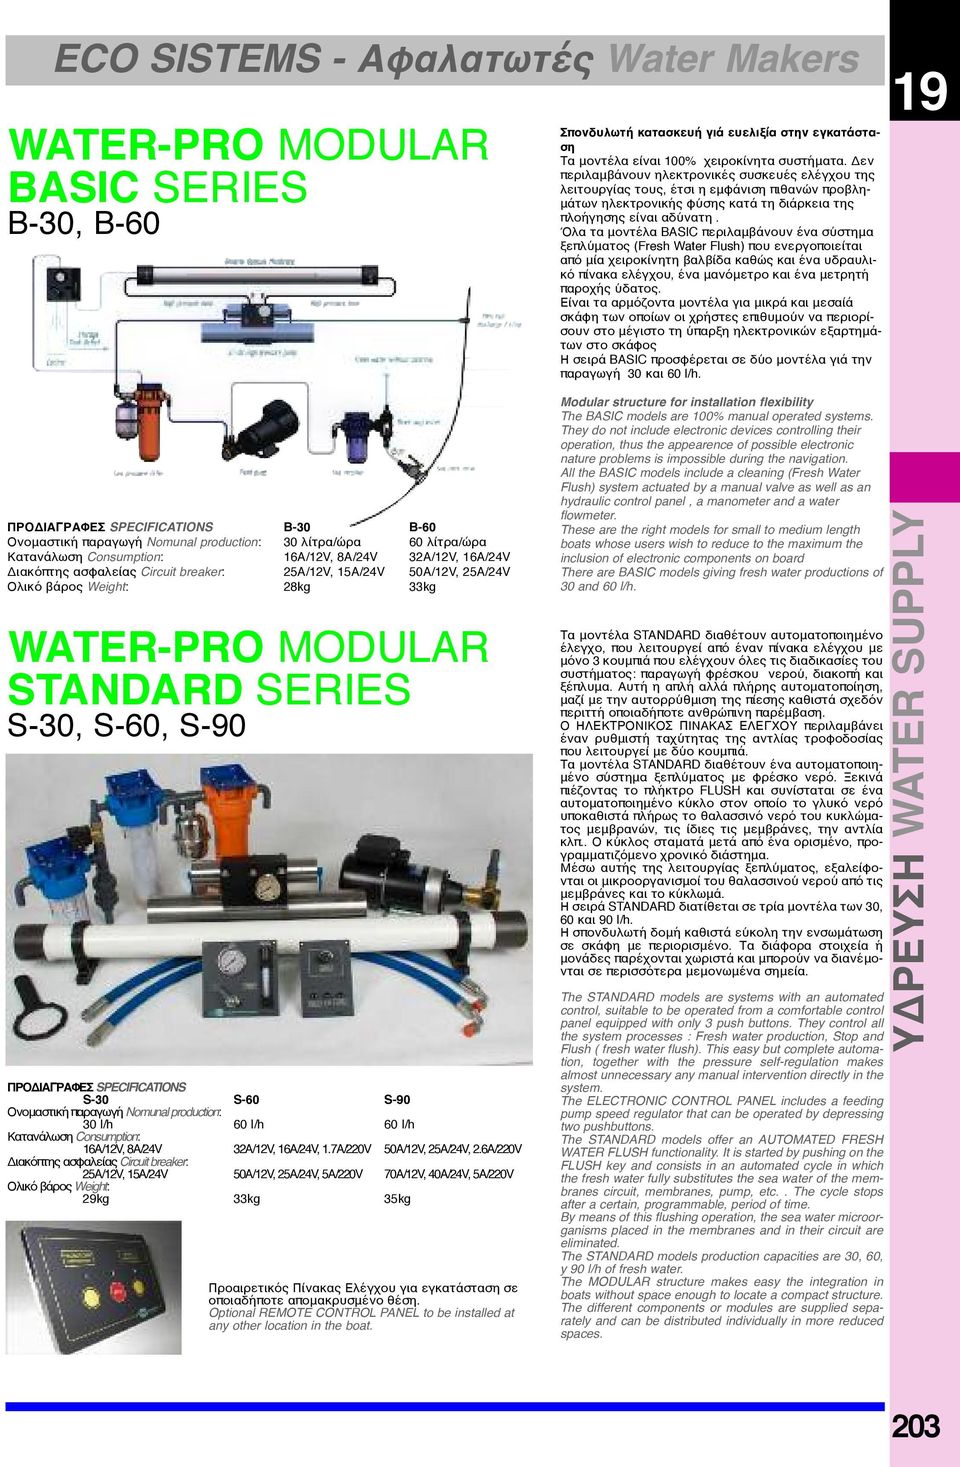 Όλα τα μοντέλα BASIC περιλαμβάνουν ένα σύστημα ξεπλύματος (Fresh Water Flush) που ενεργοποιείται από μία χειροκίνητη βαλβίδα καθώς και ένα υδραυλικό πίνακα ελέγχου, ένα μανόμετρο και ένα μετρητή